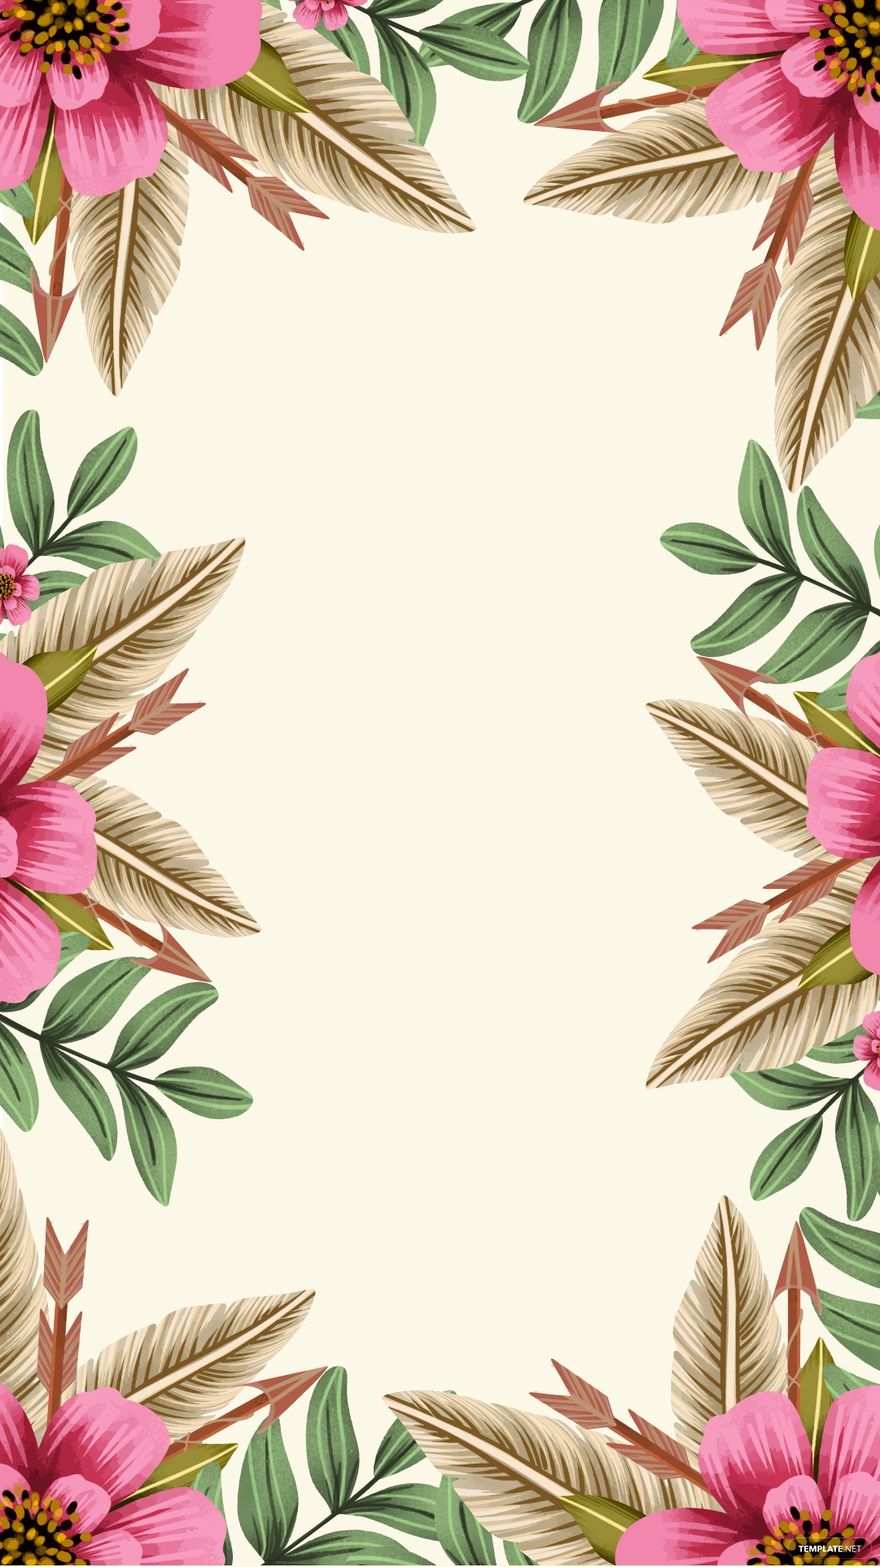 Free Boho Floral Background - EPS, Illustrator, JPG, SVG 